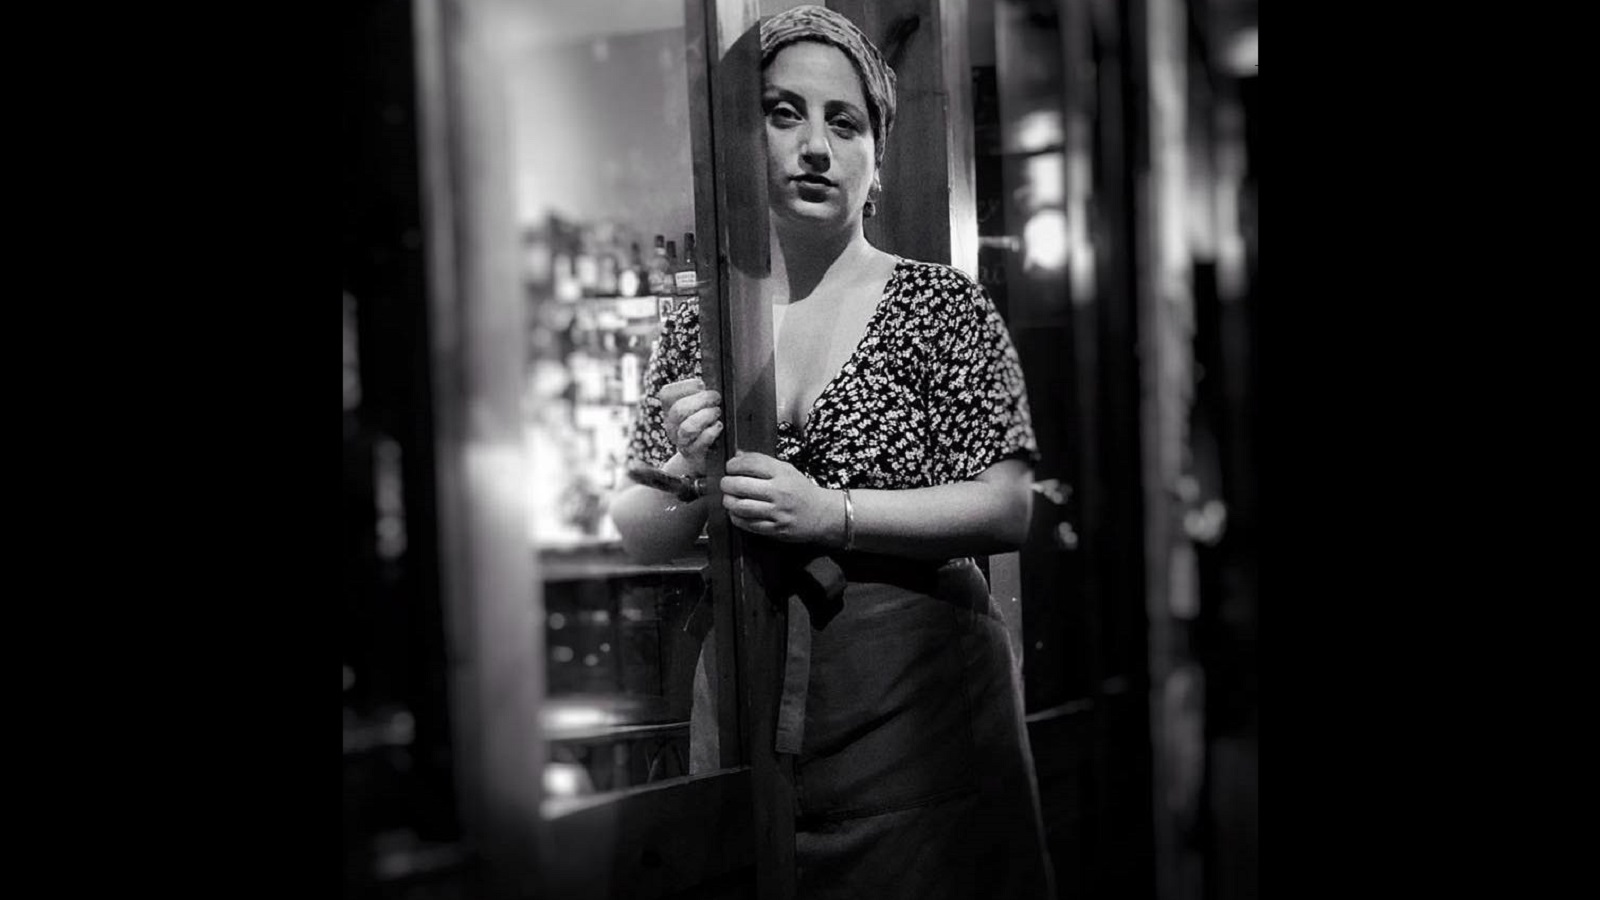 ڠرايس: امرأة المقهى.. بعض بيروت المُفتَقَدة